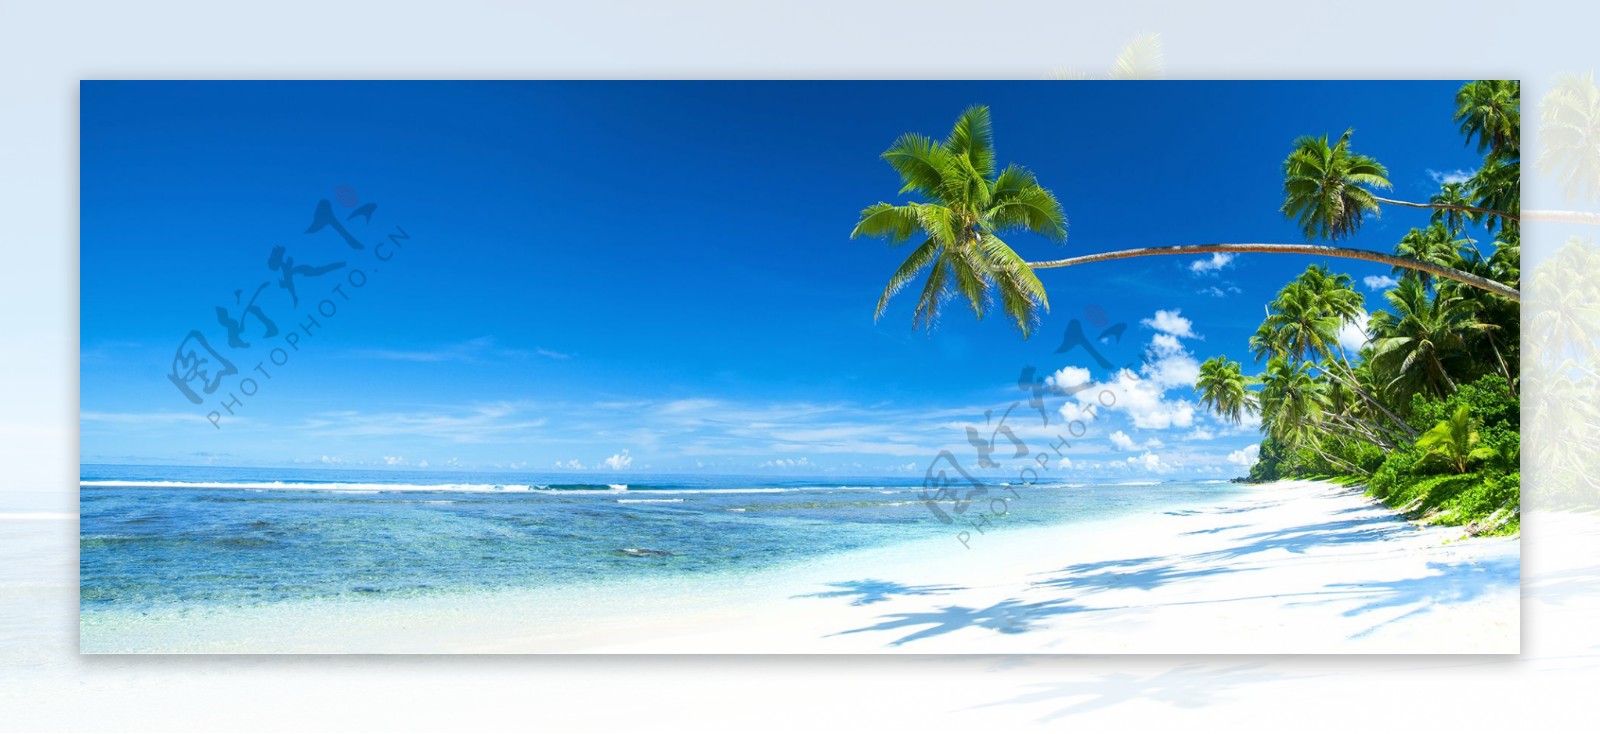 摄影风景大海沙滩蓝天白云椰树